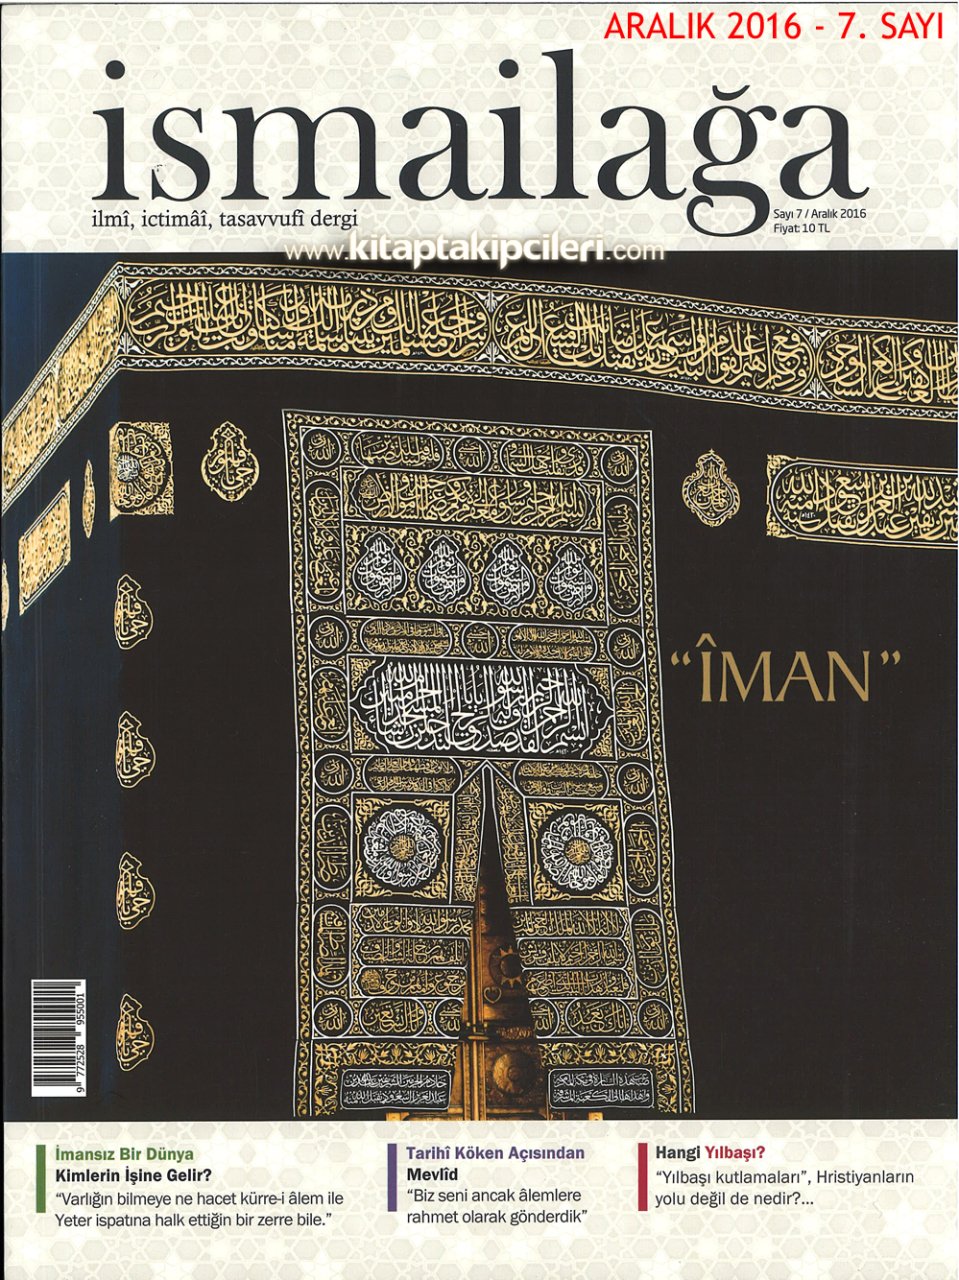 İsmailağa Dergisi ARALIK 2016 Sayısı - İMAN